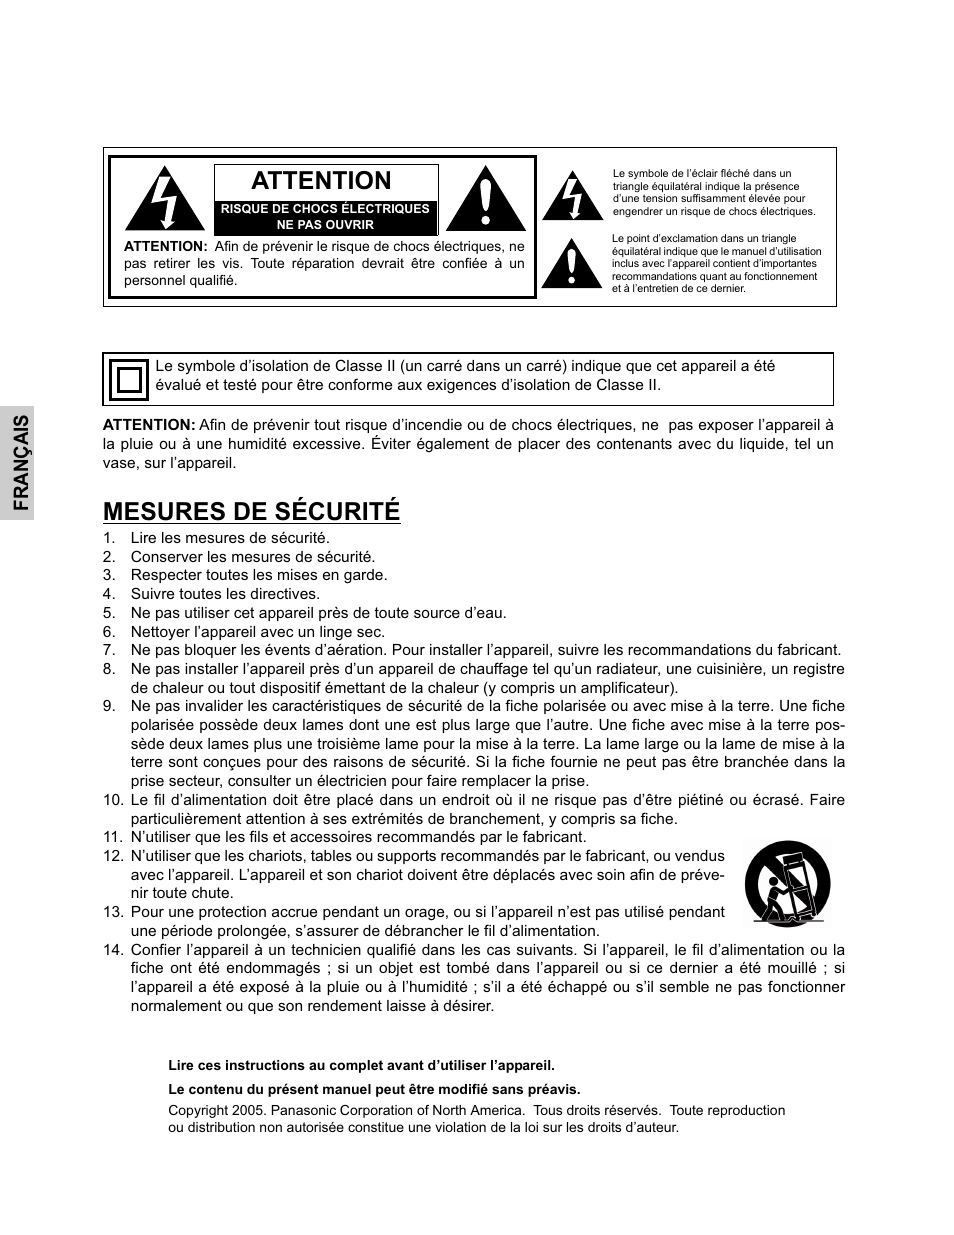 Attention, Mesures de sécurité, Français | Panasonic CT-32HC15 Manuel d'utilisation | Page 26 / 56